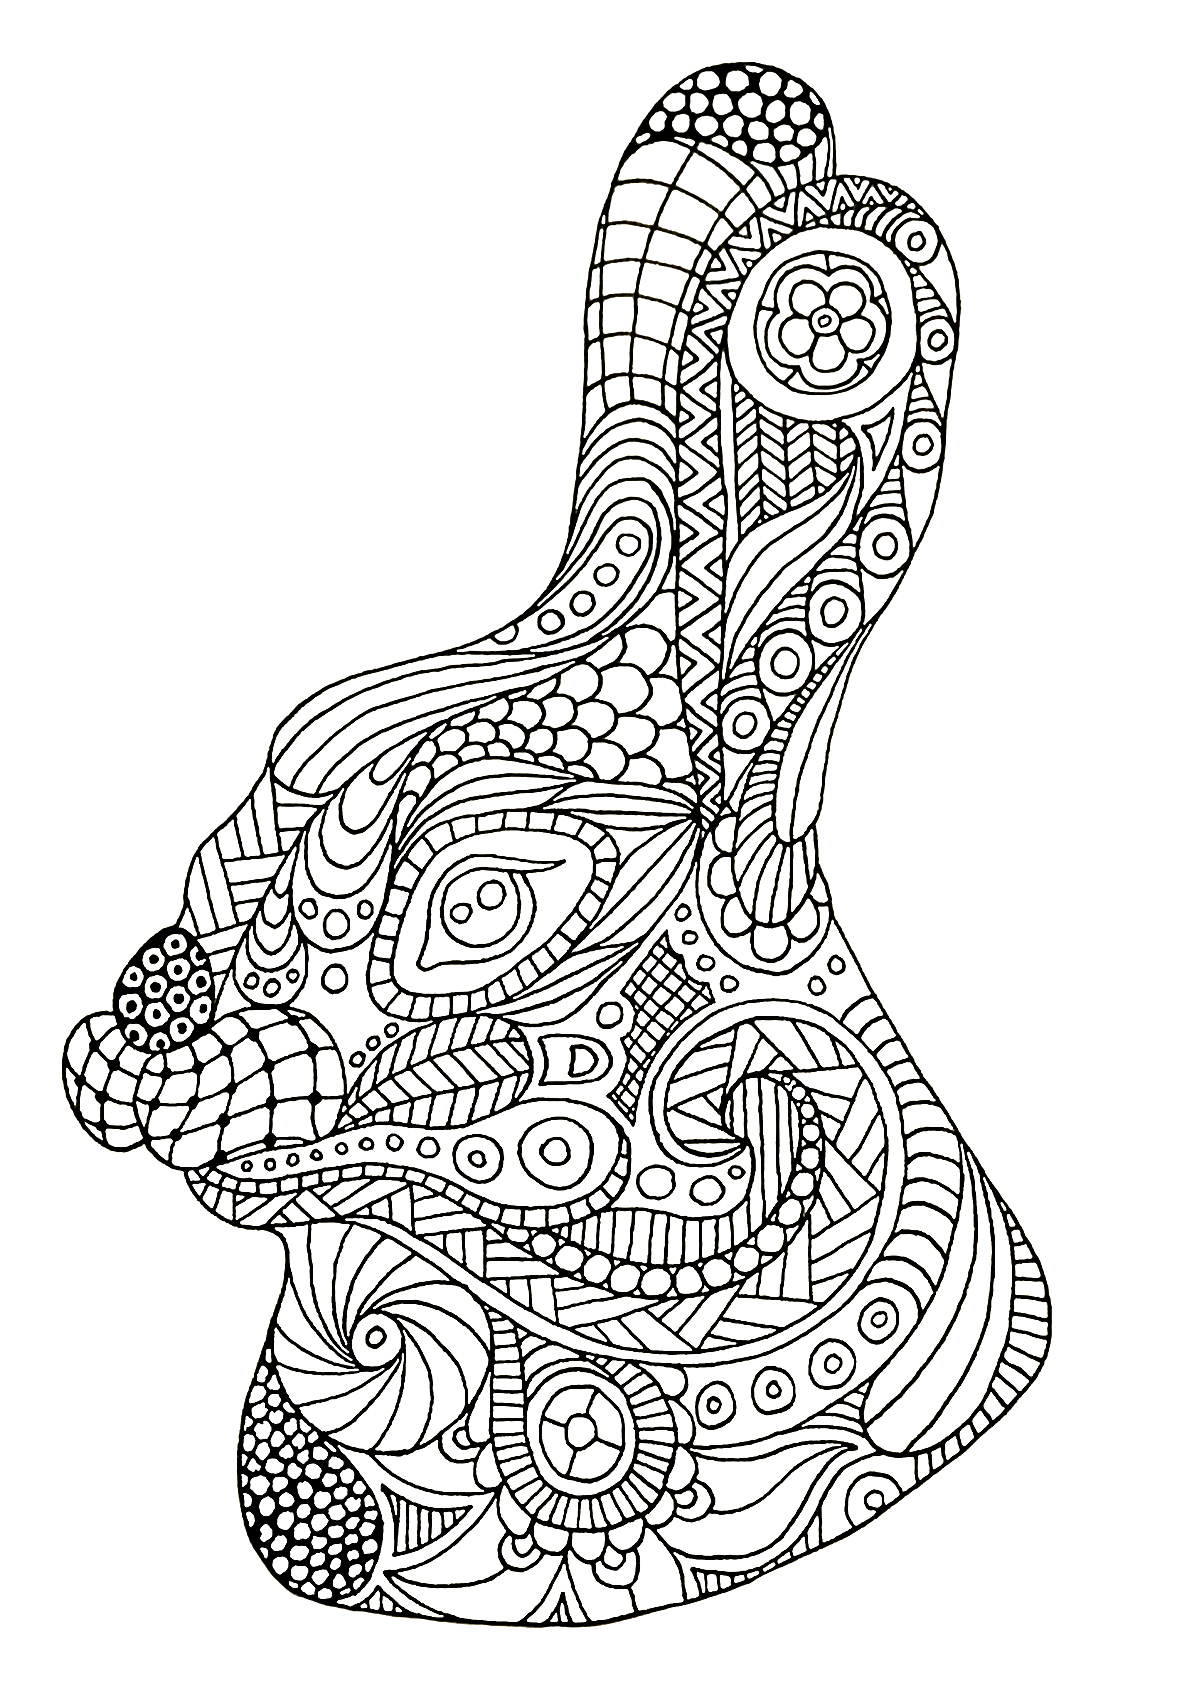 Tête de lapin dessinée avec le style Zentangle